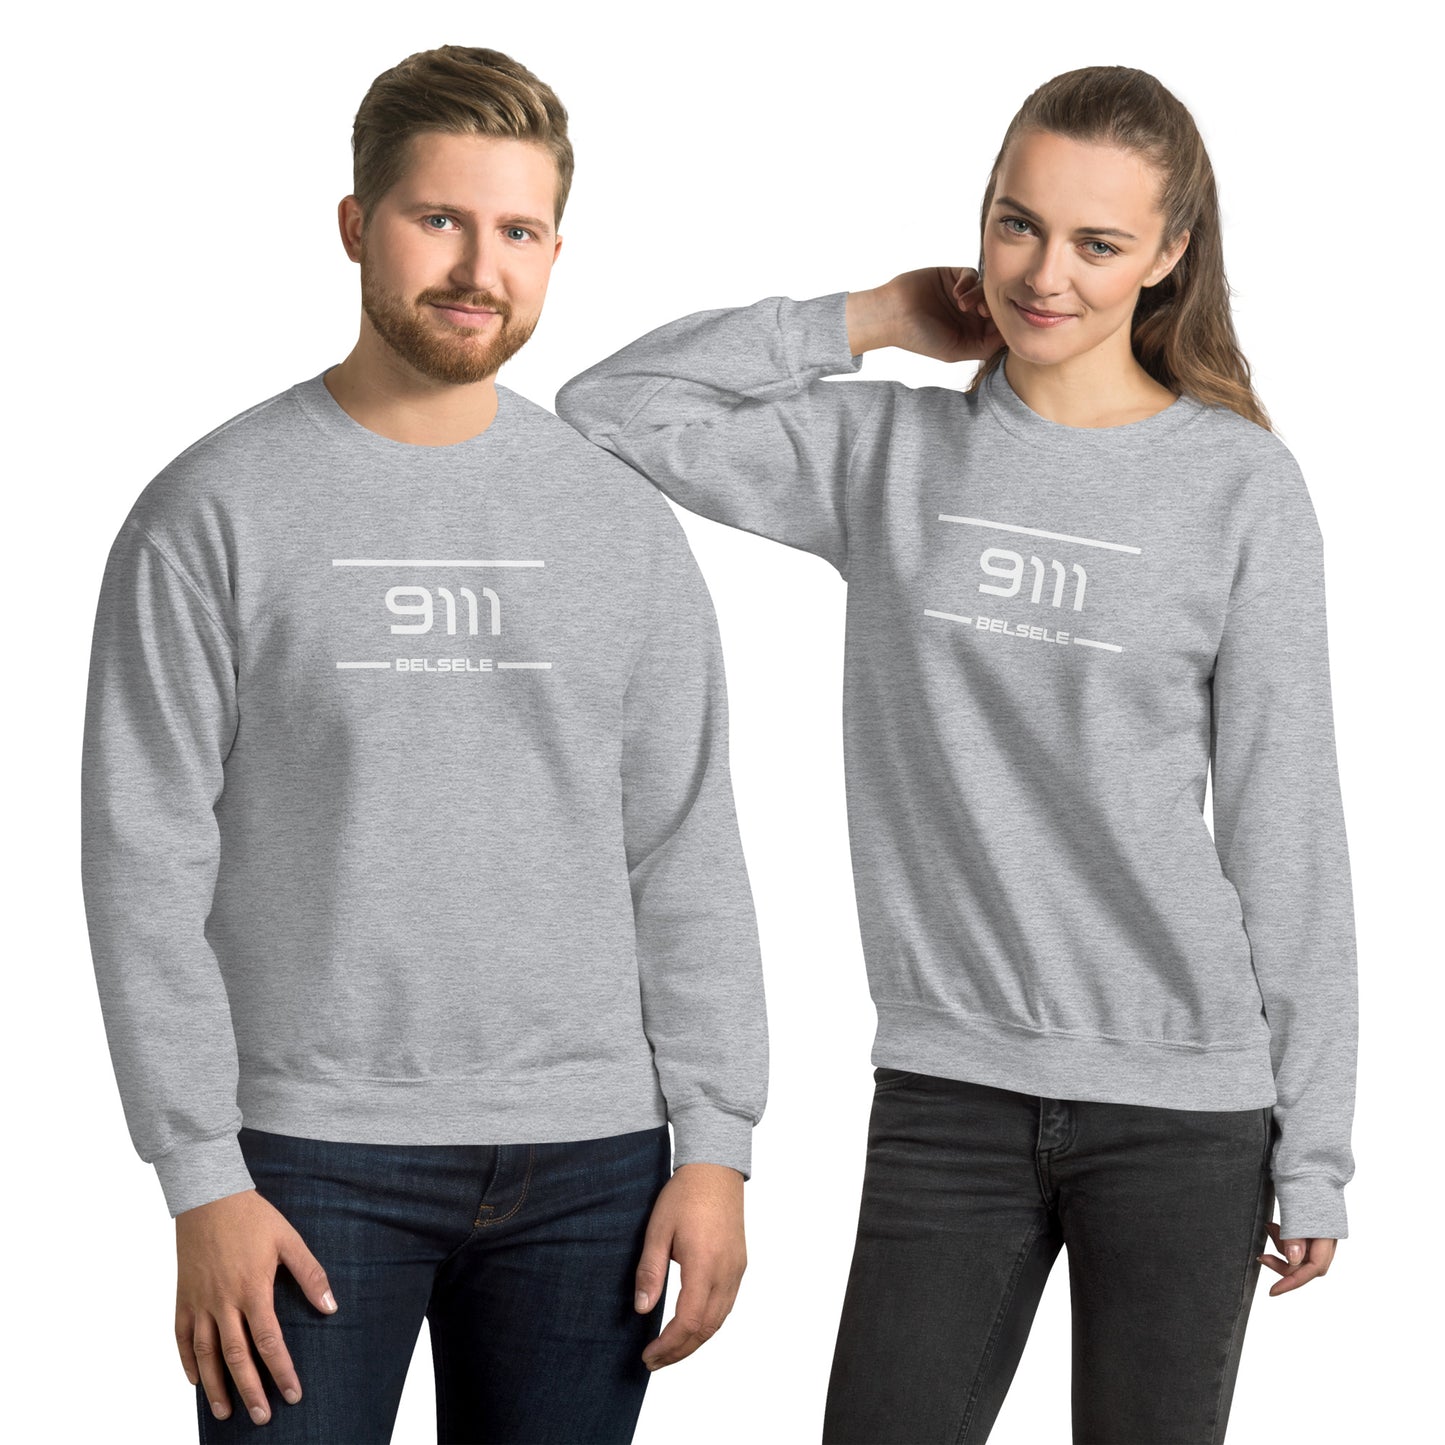 Sweater - 9111 - Belsele (M/V)